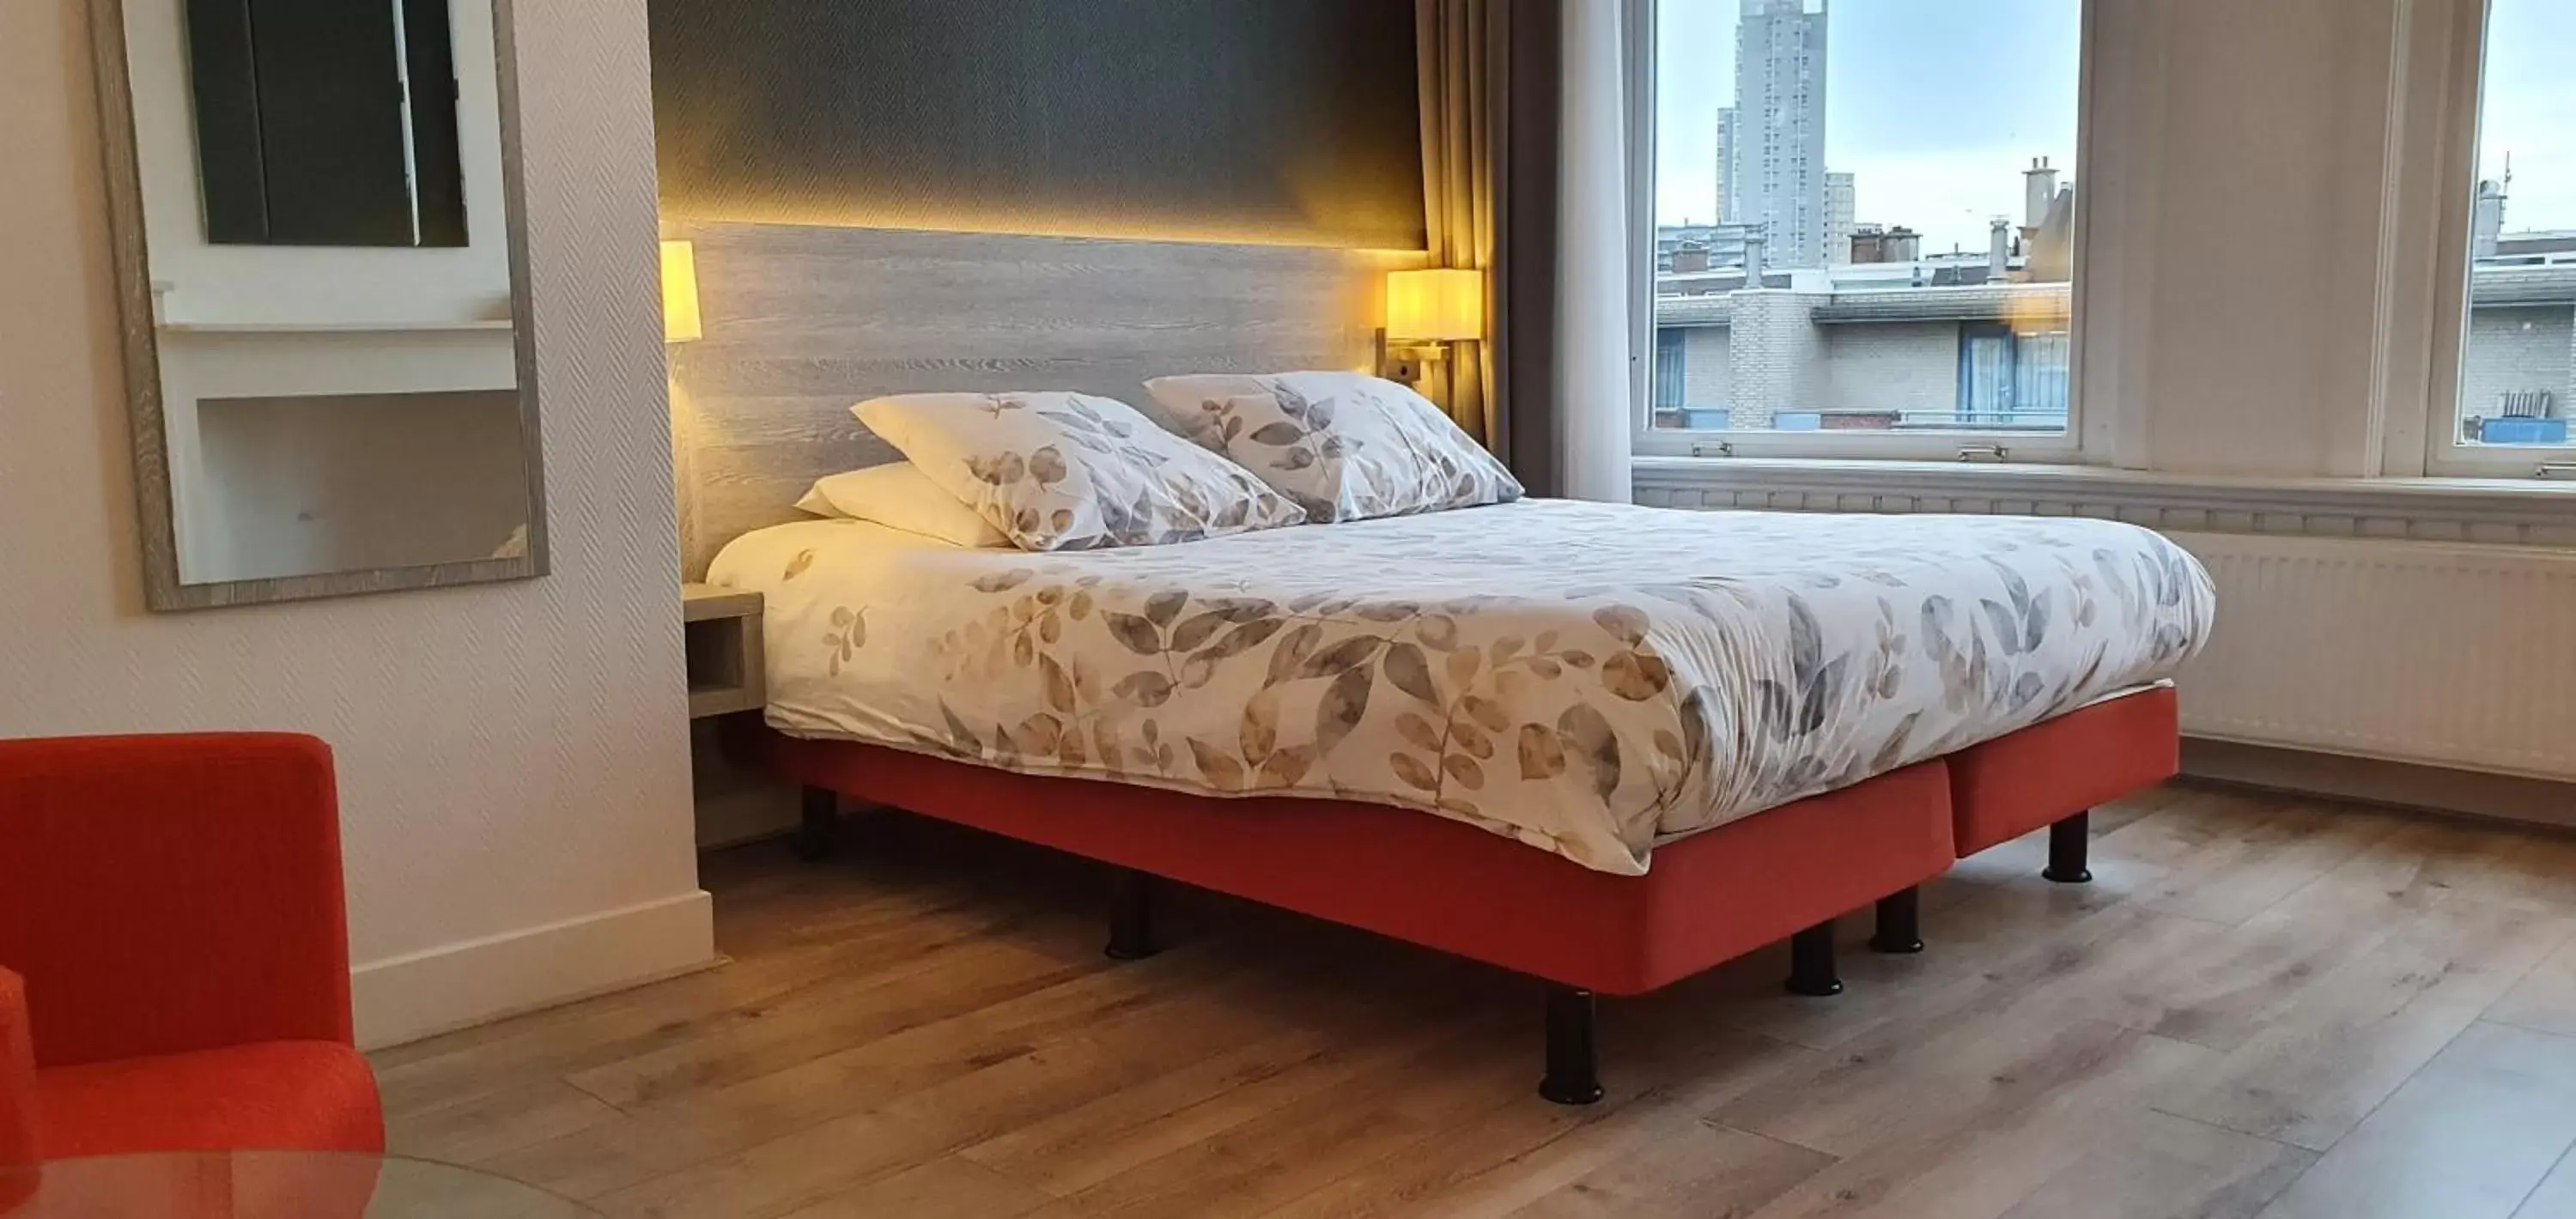 Bed in Hotel Bor Scheveningen